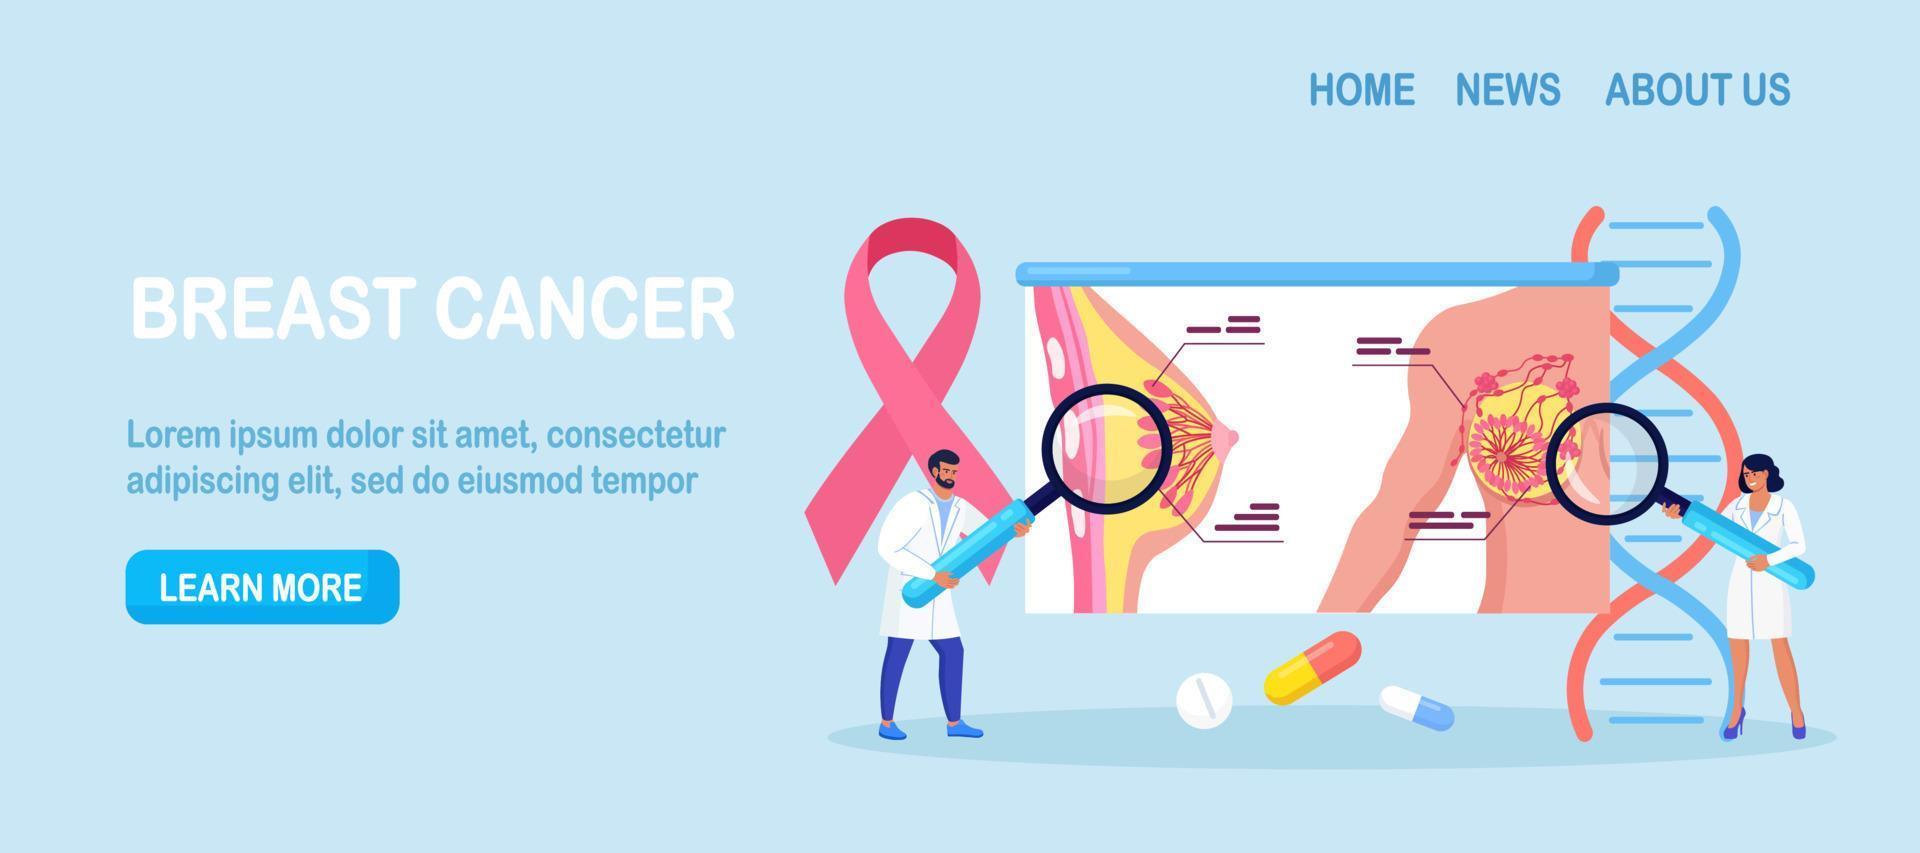 borstscreening en mammografie, diagnostiek van oncologie. mammoloog arts diagnosticeert borstkanker met vergroten. roze lintje. gezondheidszorg en medisch onderzoek vector